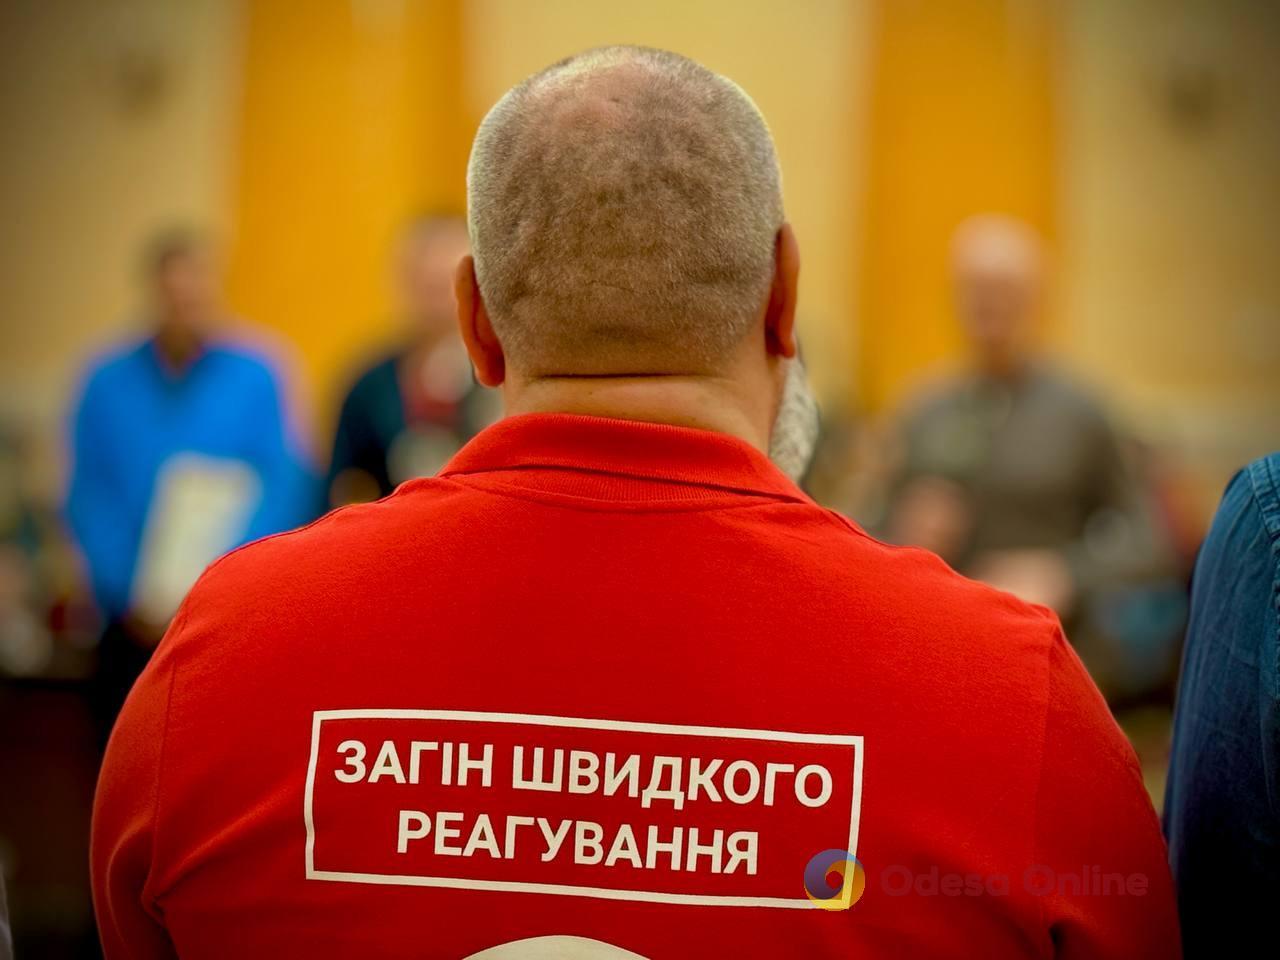 Одеські рятувальники отримали почесні нагороди